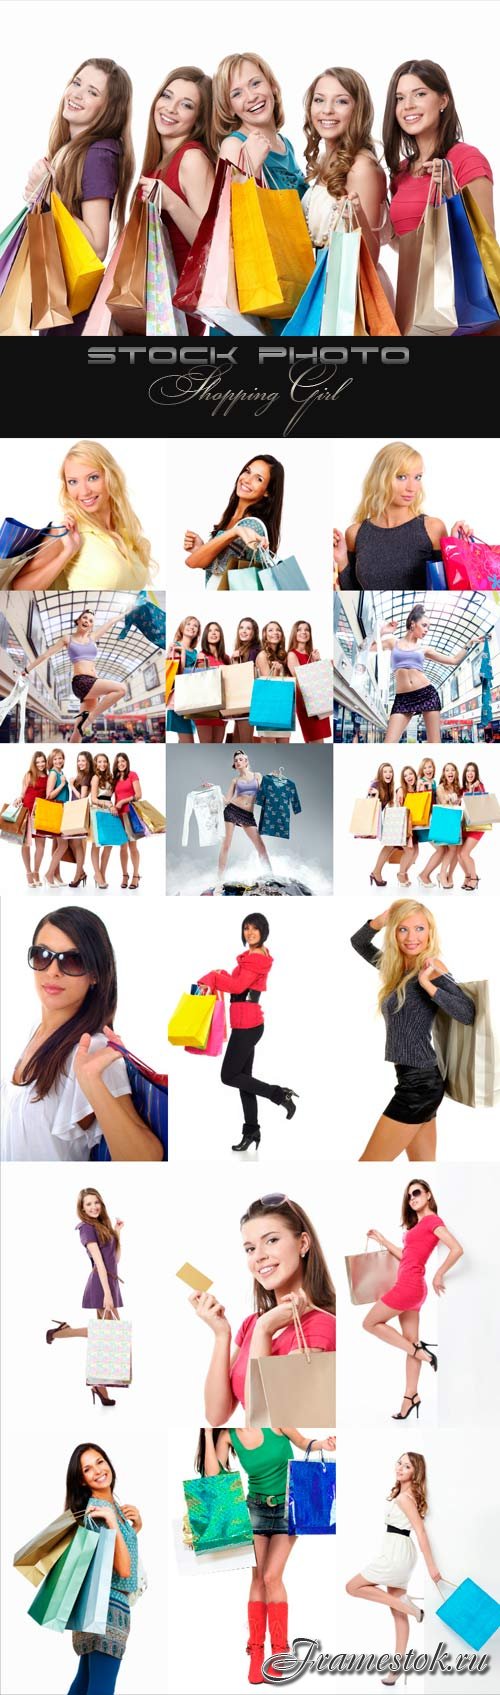 Shopping Girl raster graphics